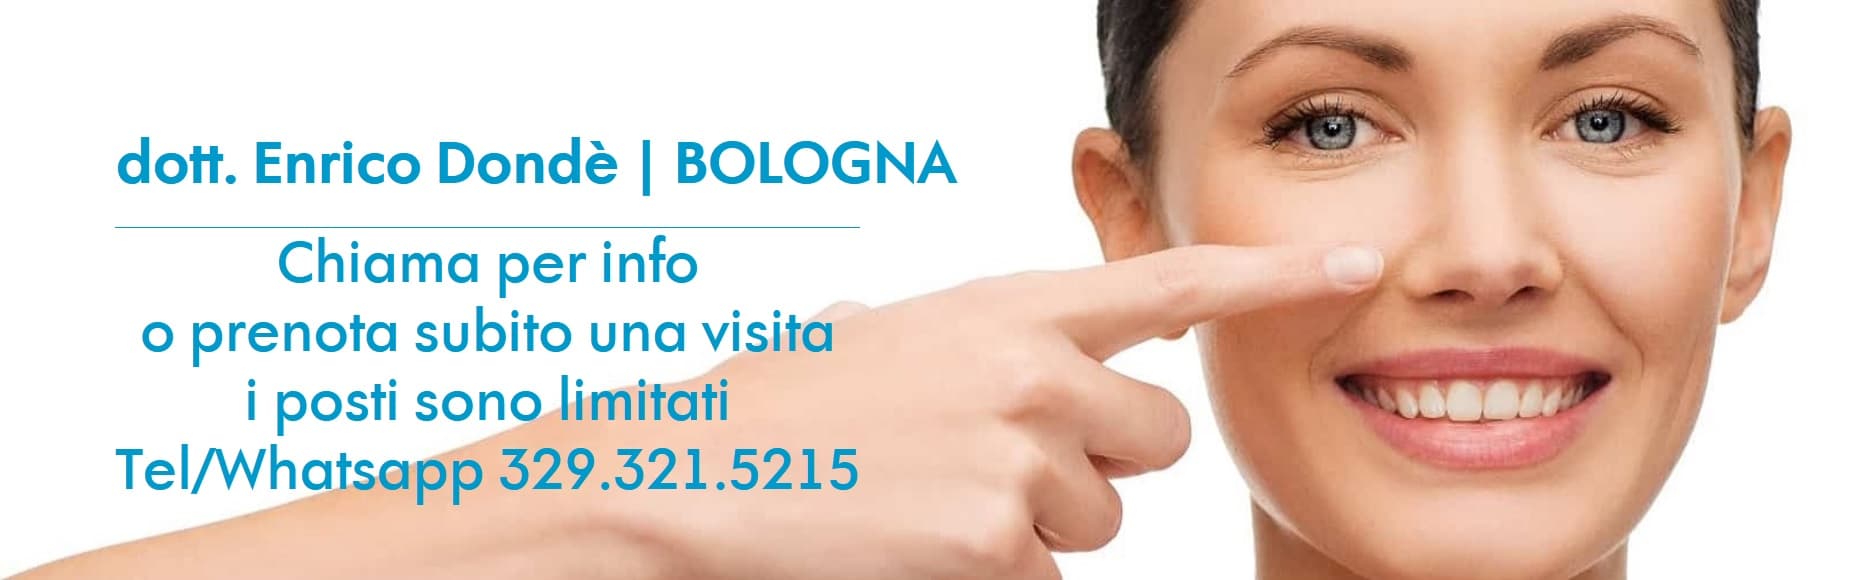 Visite con specialistica per Rinoplastica a Bologna